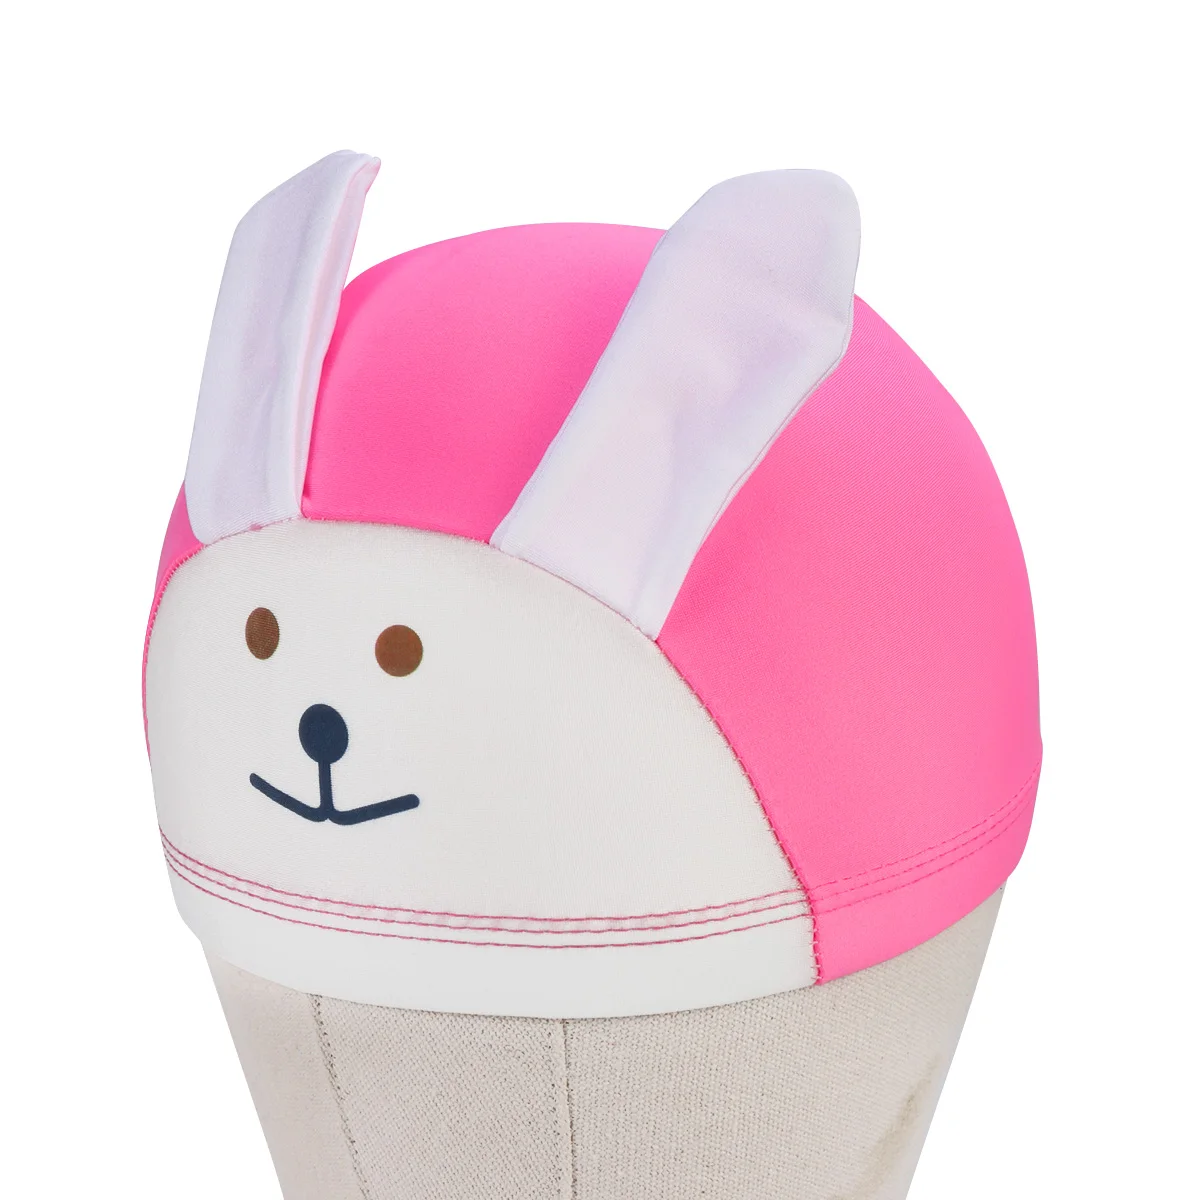 Креативная Милая Удобная шапочка для плавания с рисунком кролика смешная шапка шапочка для плавания для детей